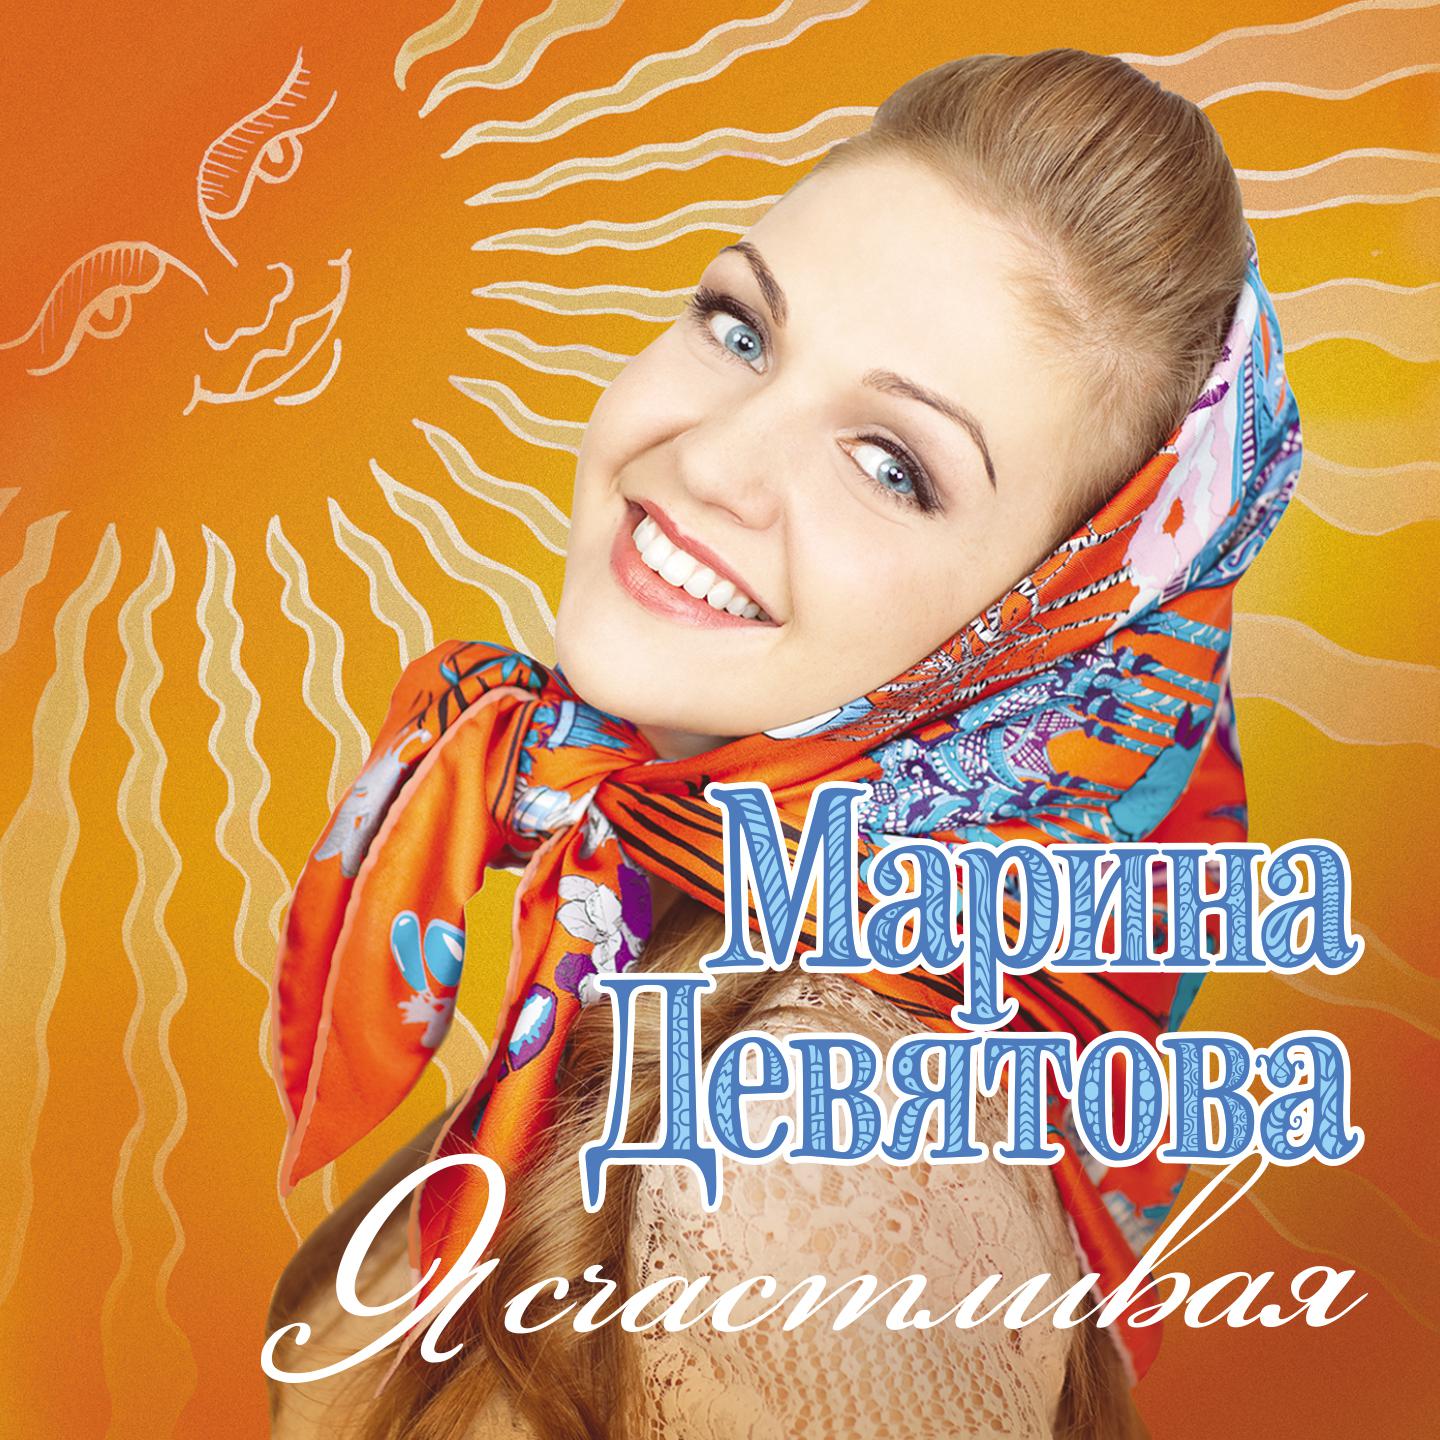 Песни девятовой лучшее сборник. Марины Девятовой - я счастливая (2011).